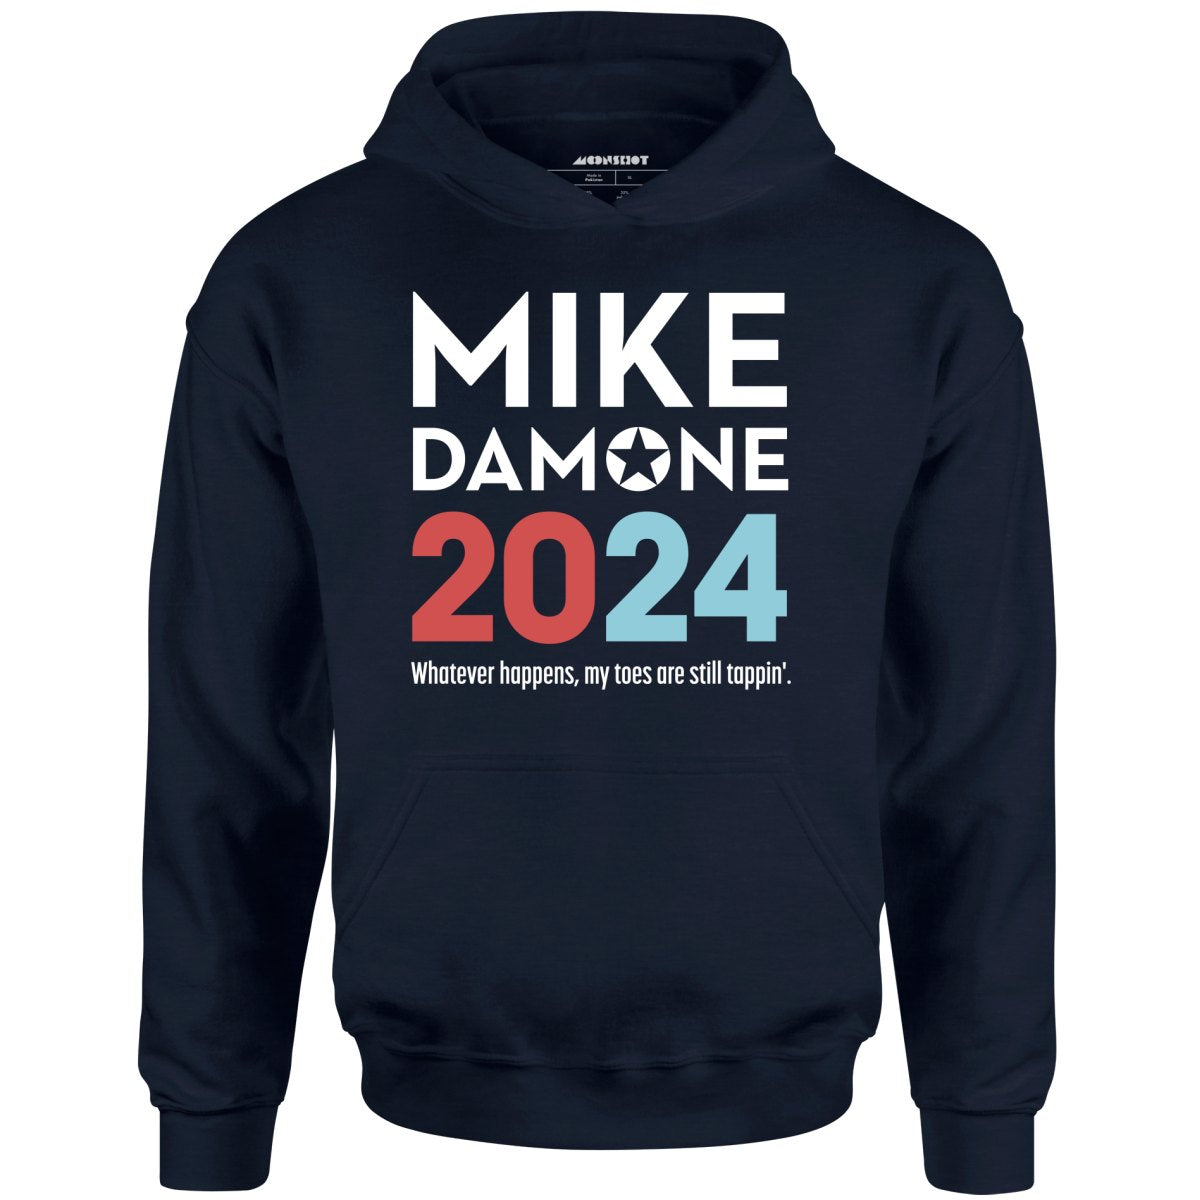 Mike Damone 2024 - Unisex Hoodie